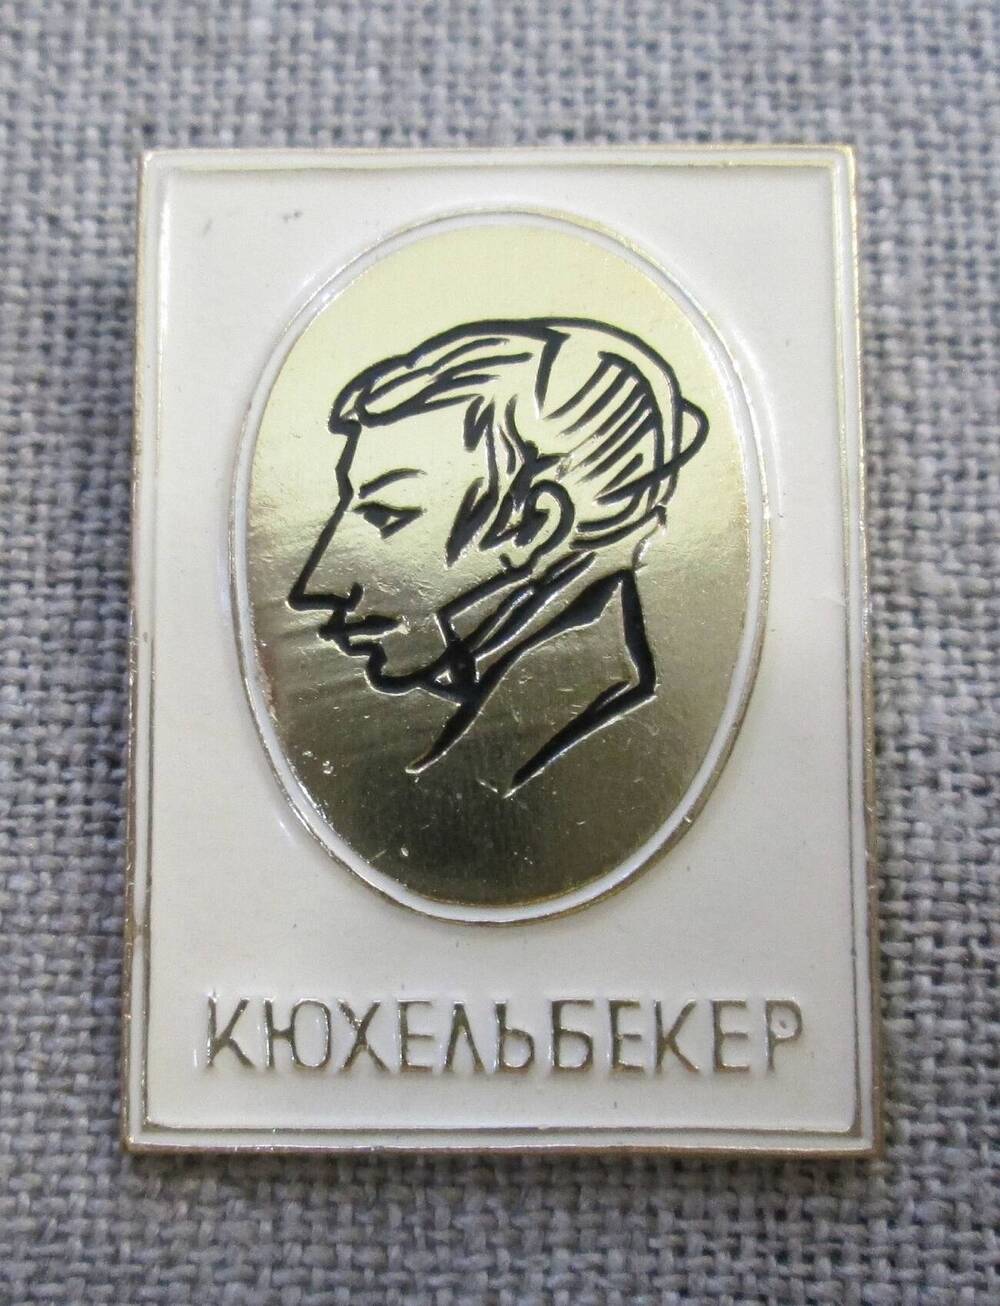 Значок Кюхельбекер, 1970-е гг.